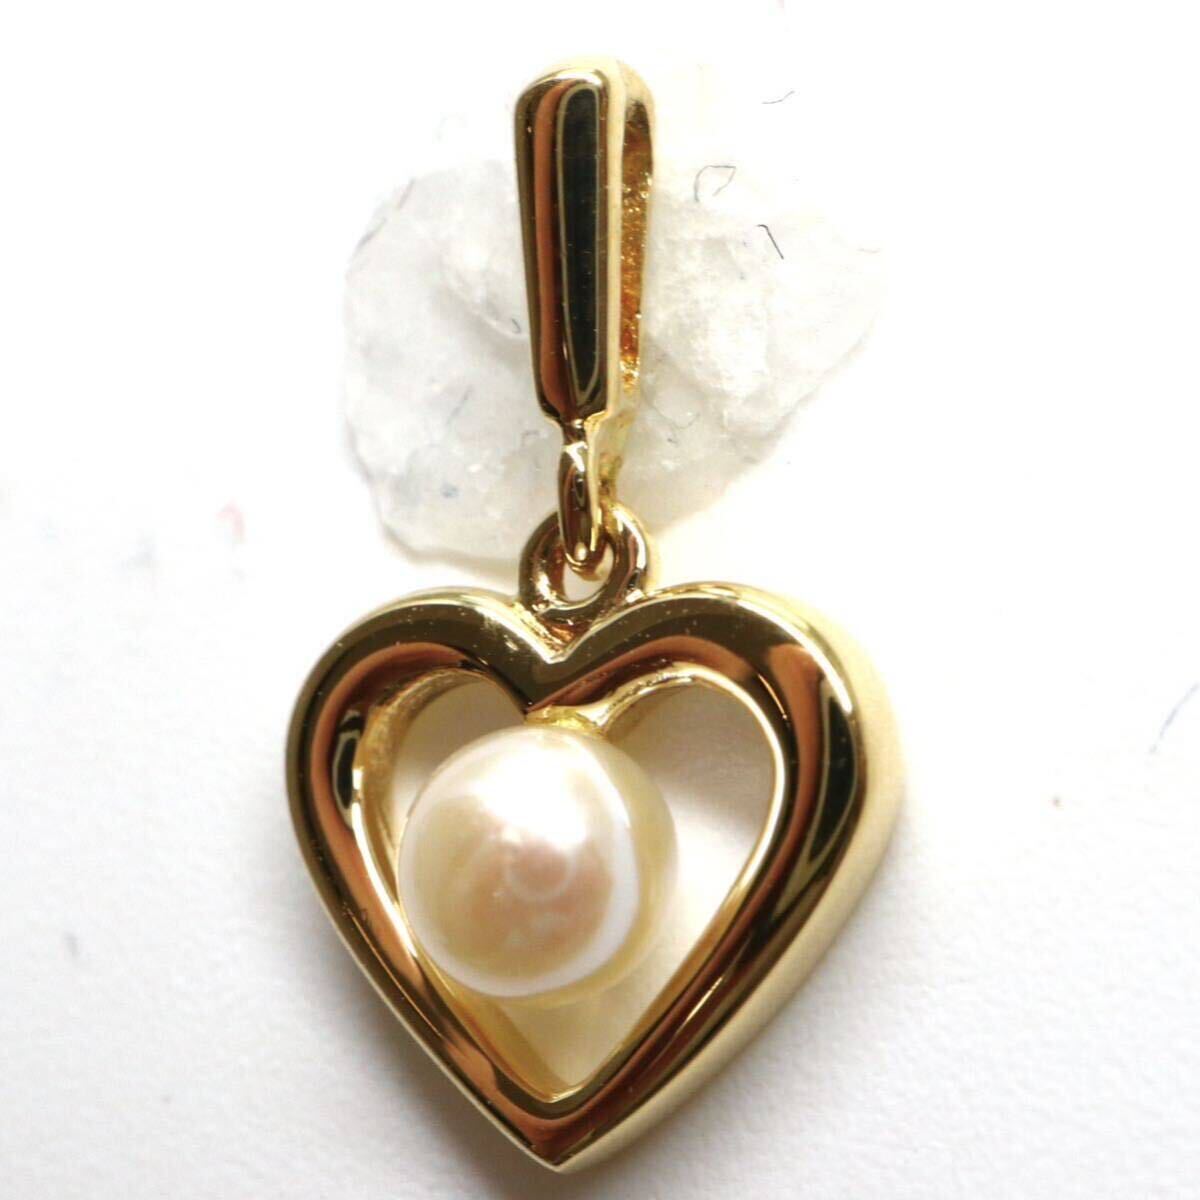 MIKIMOTO(ミキモト)箱付き!!テリ良し!!《K18 アコヤ本真珠ペンダントトップ》M 約0.7g pendant パール pearl jewelry ジュエリー DF6/DI6の画像3